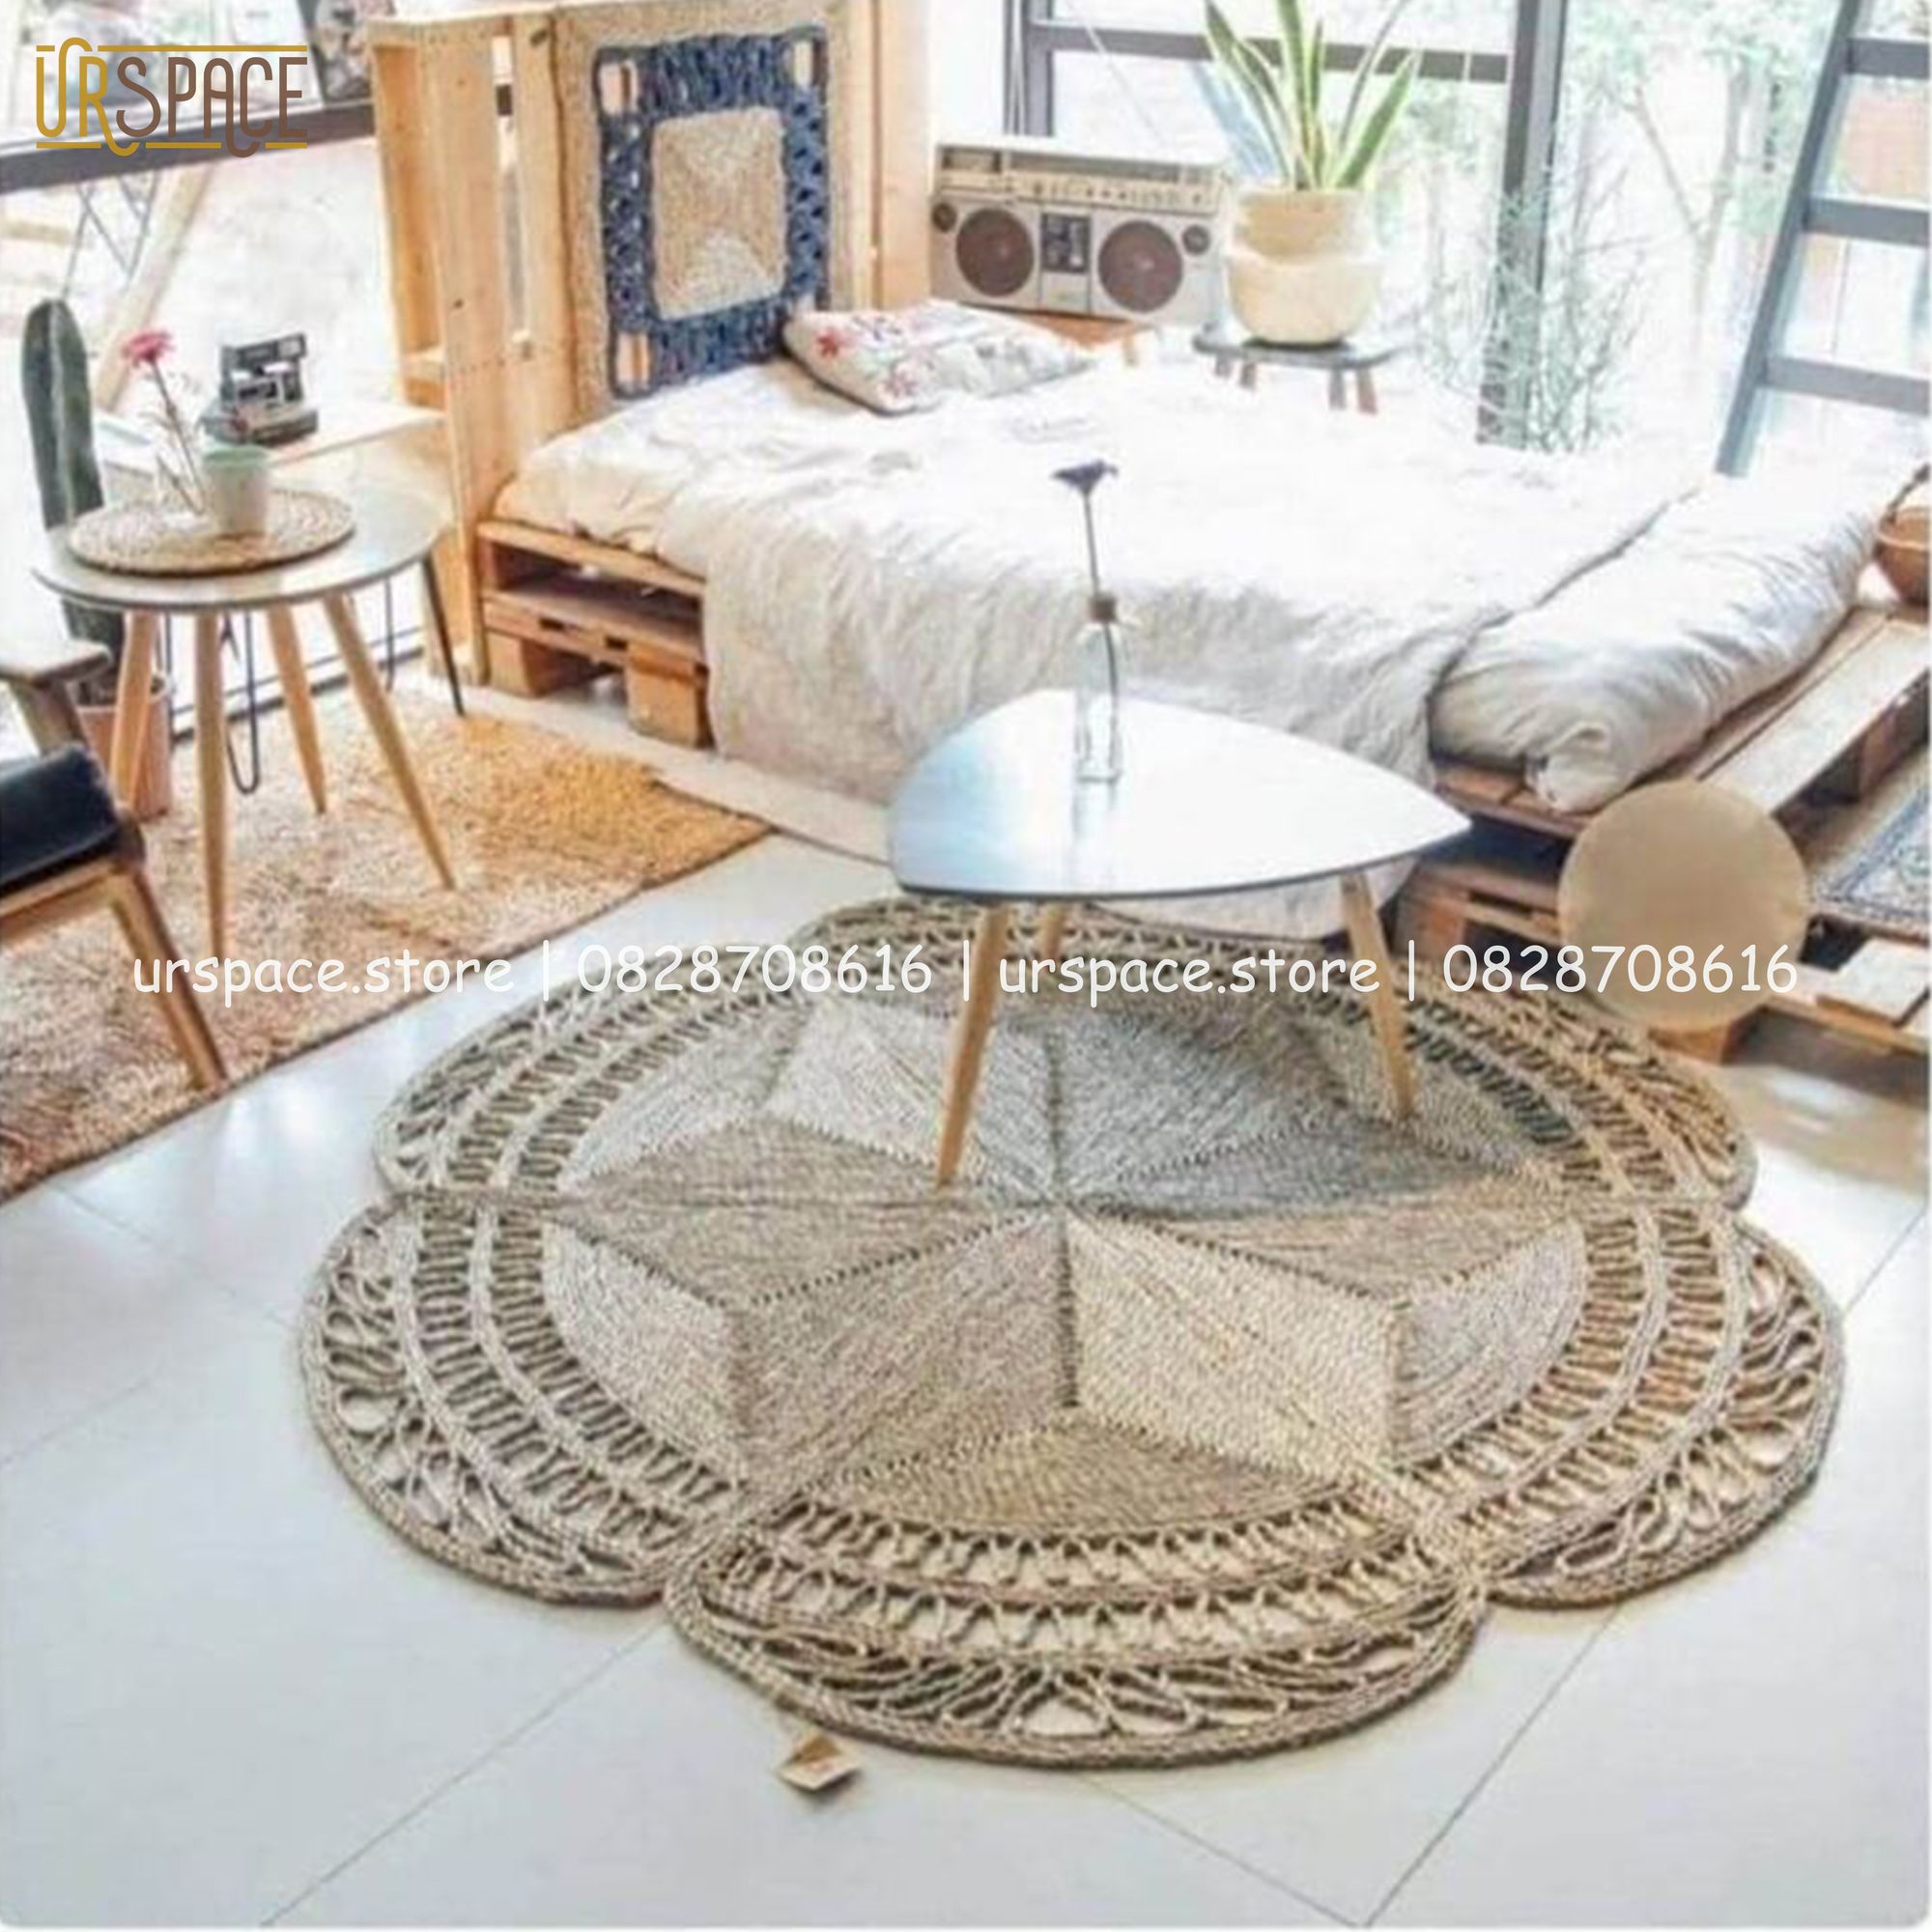 Thảm cói tròn thảm trải phòng khách thảm chụp ảnh đường kính 100cm/ Round water hyacinth rugs for living room